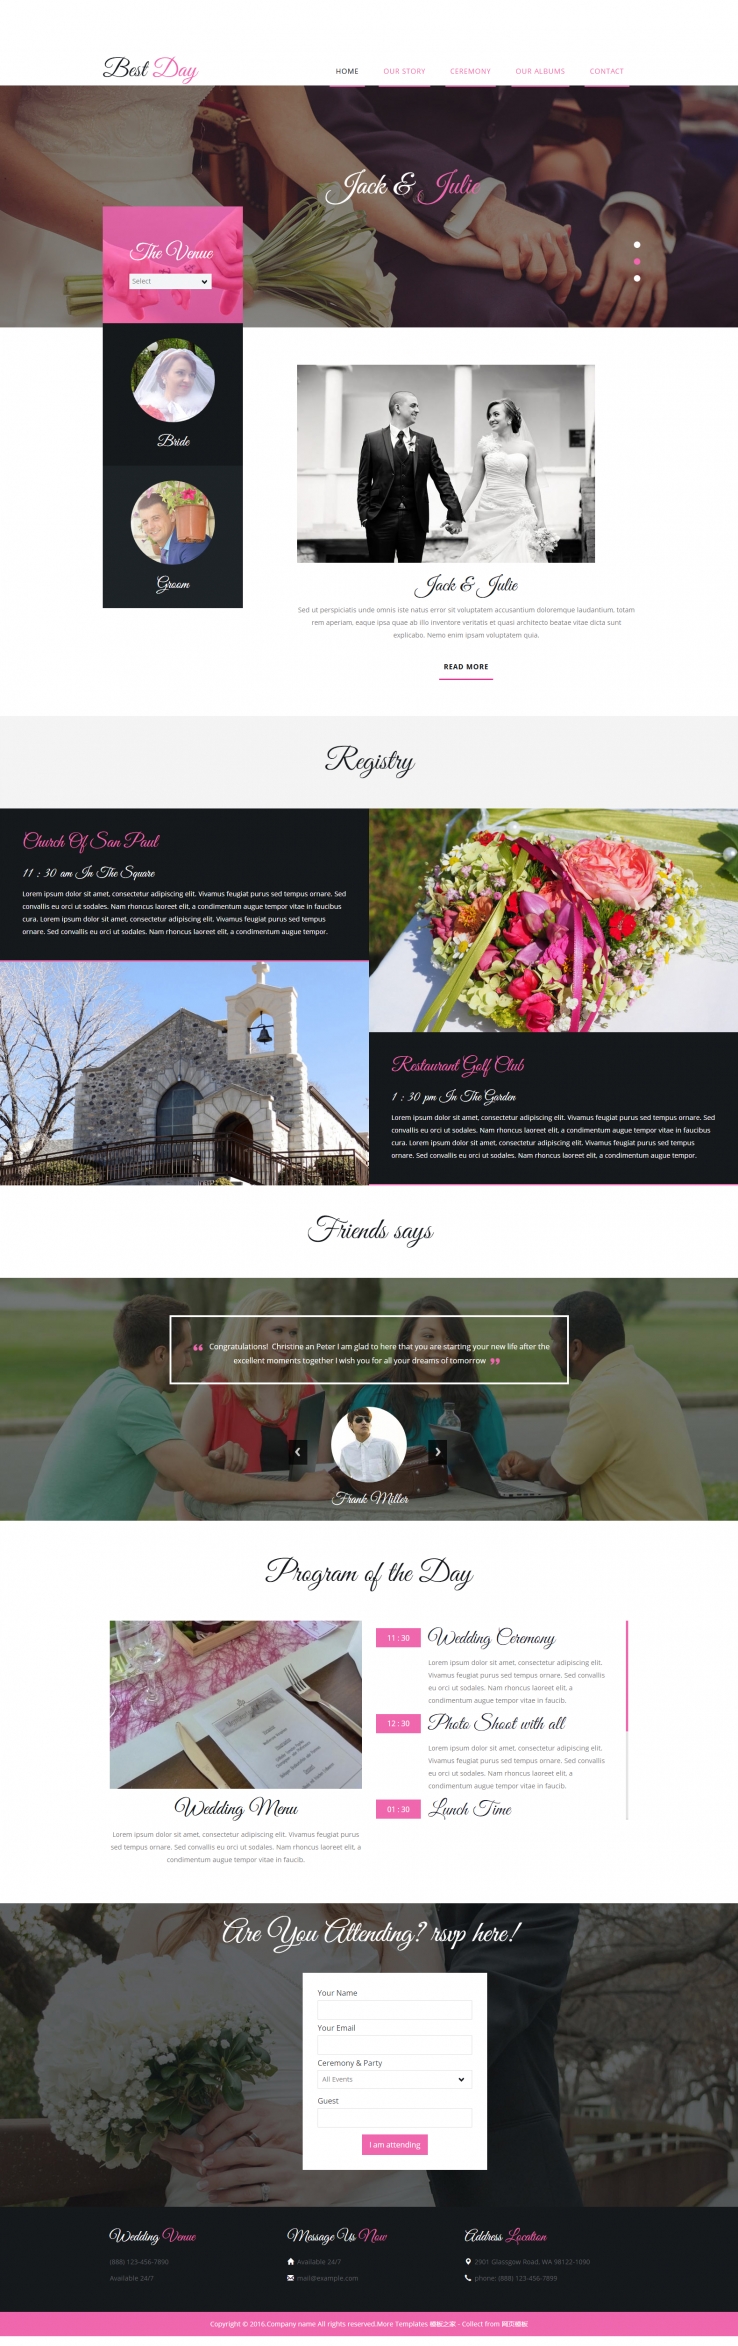 白色大气风格的婚礼布置现场企业网站模板下载